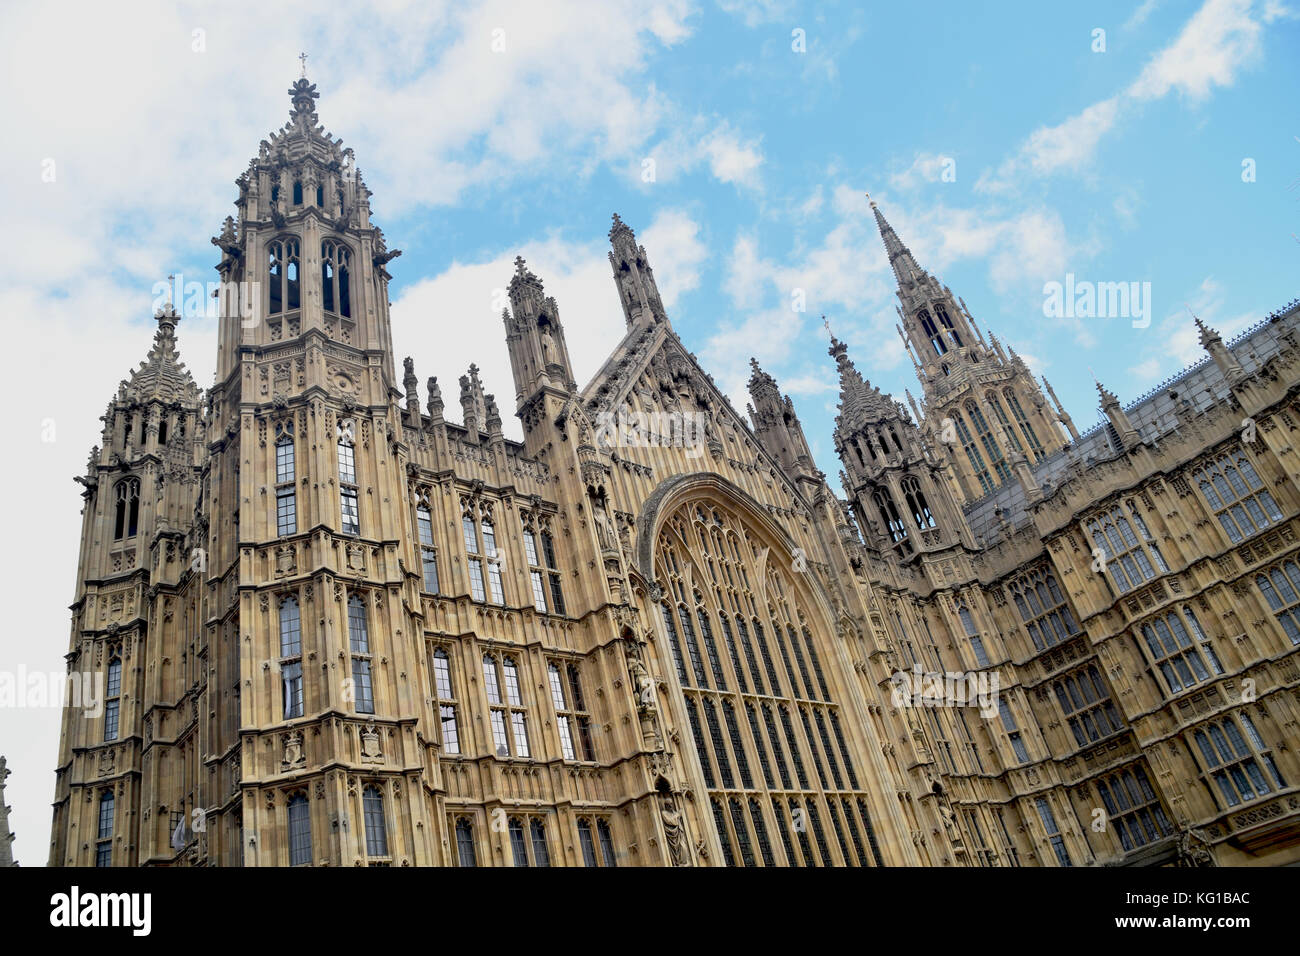 El Parlamento del Reino Unido, conocida casa del parlamento, el edificio del parlamento británico - día soleado - palacio de verano de Westminster House of Lords Foto de stock